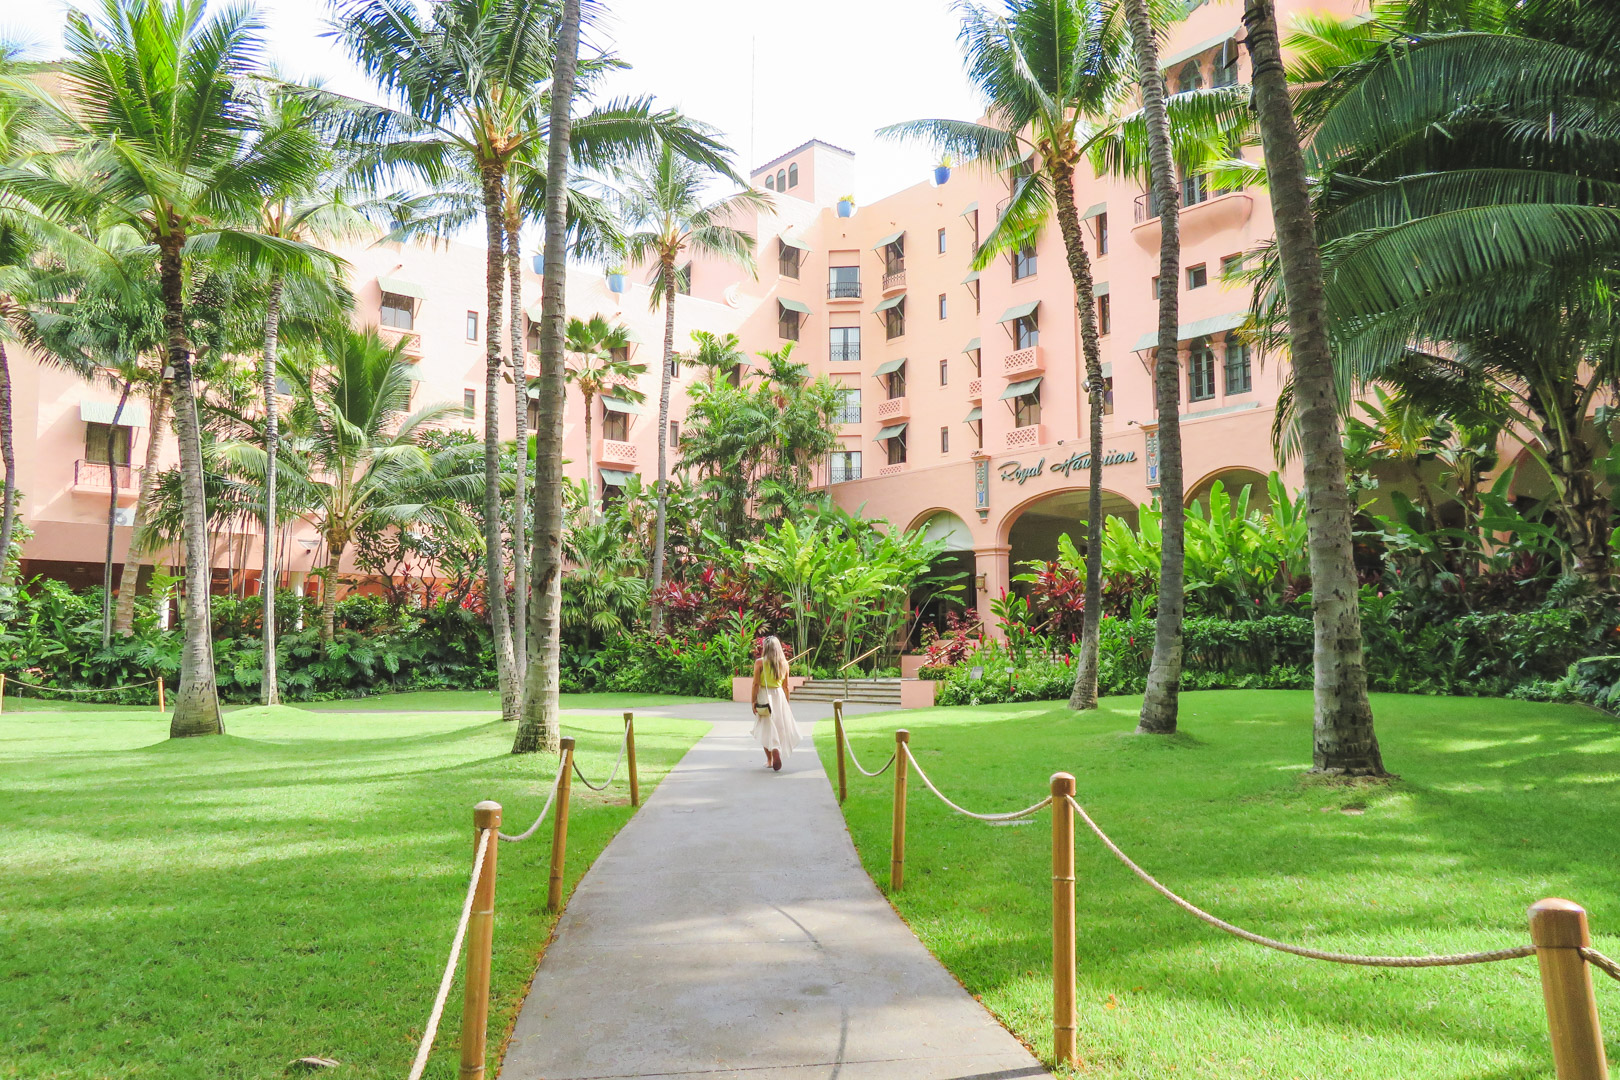 Waikiki Royal Hawaiian Hotel